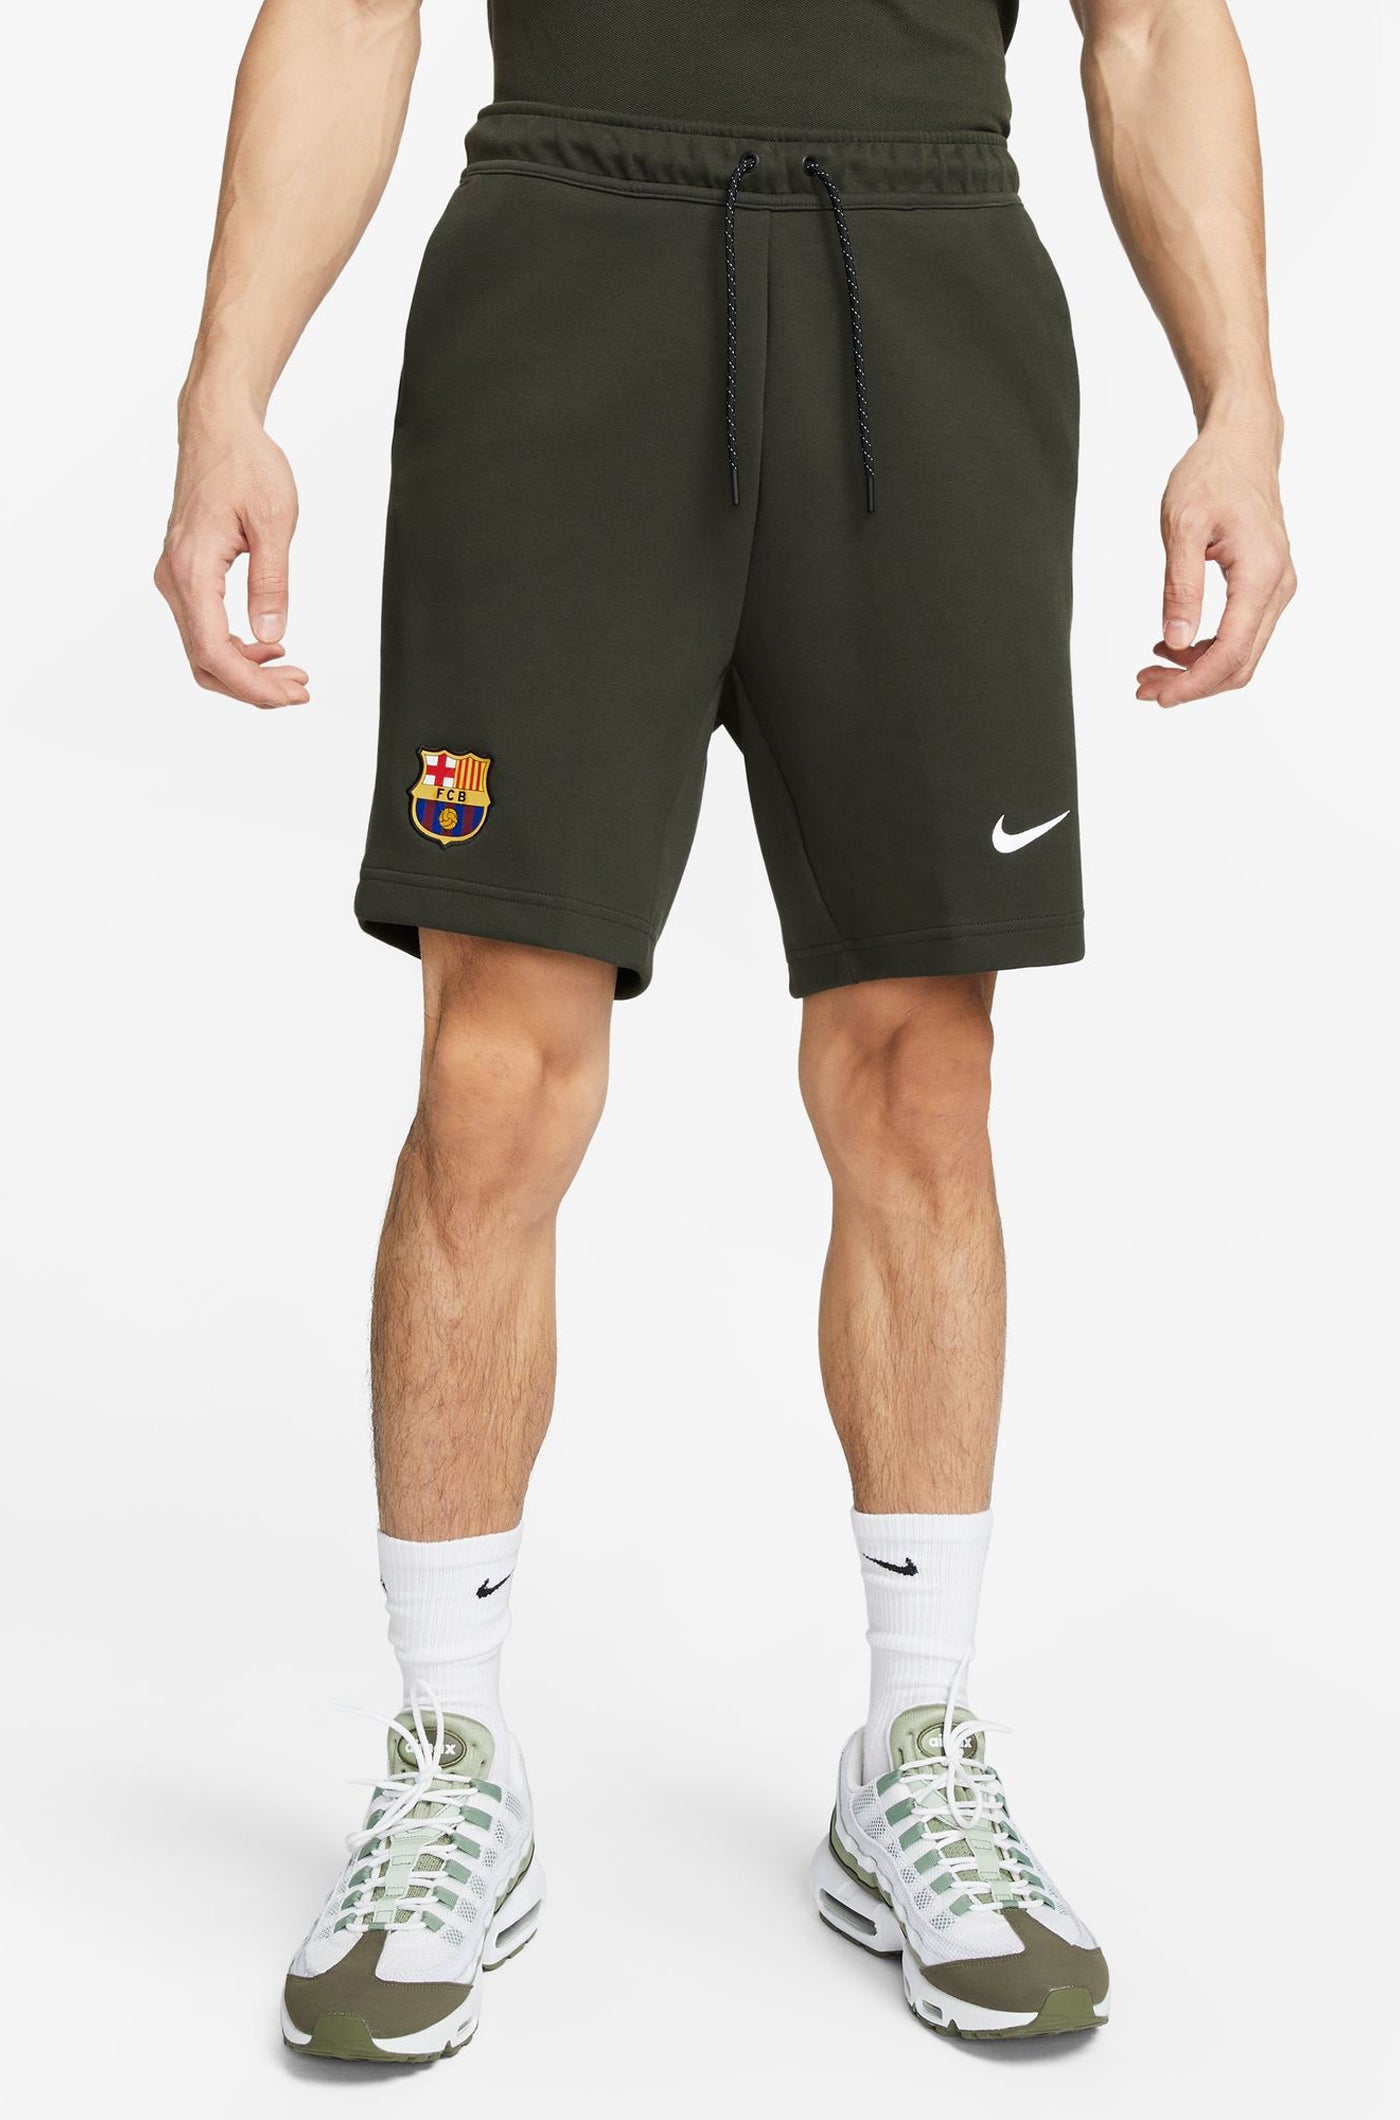 Pantalons verd Barça Nike